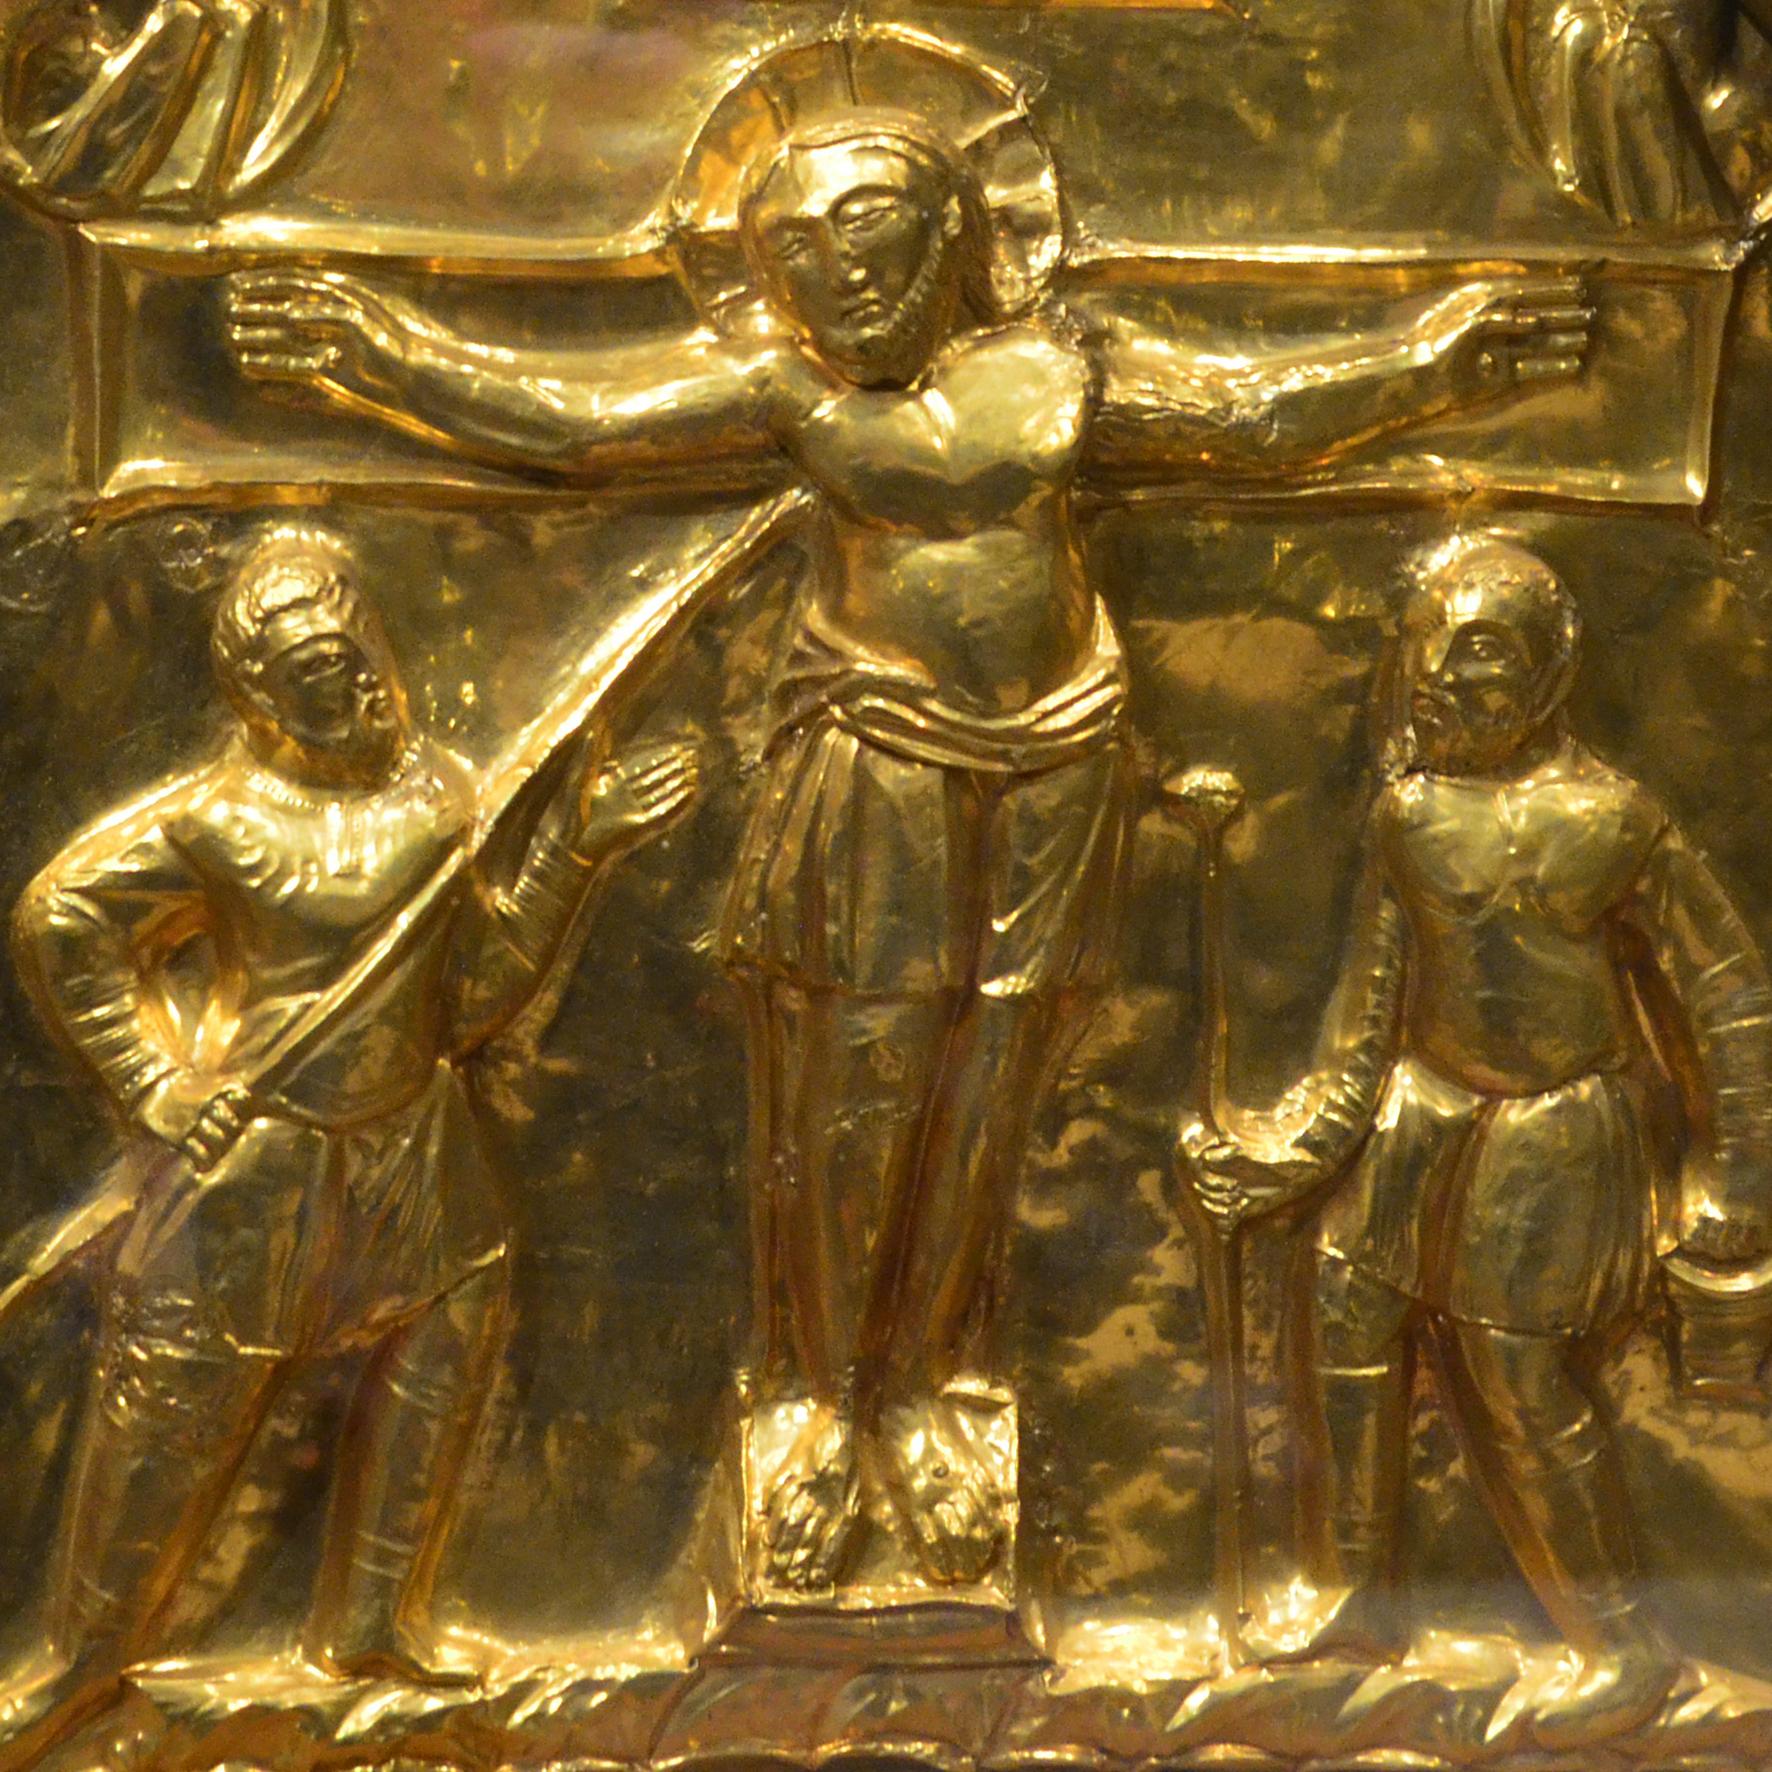 Kreuzigung, Detail aus der Pala d'oro im Aachener Dom (c) Domkapitel Aachen/Andreas Steindl